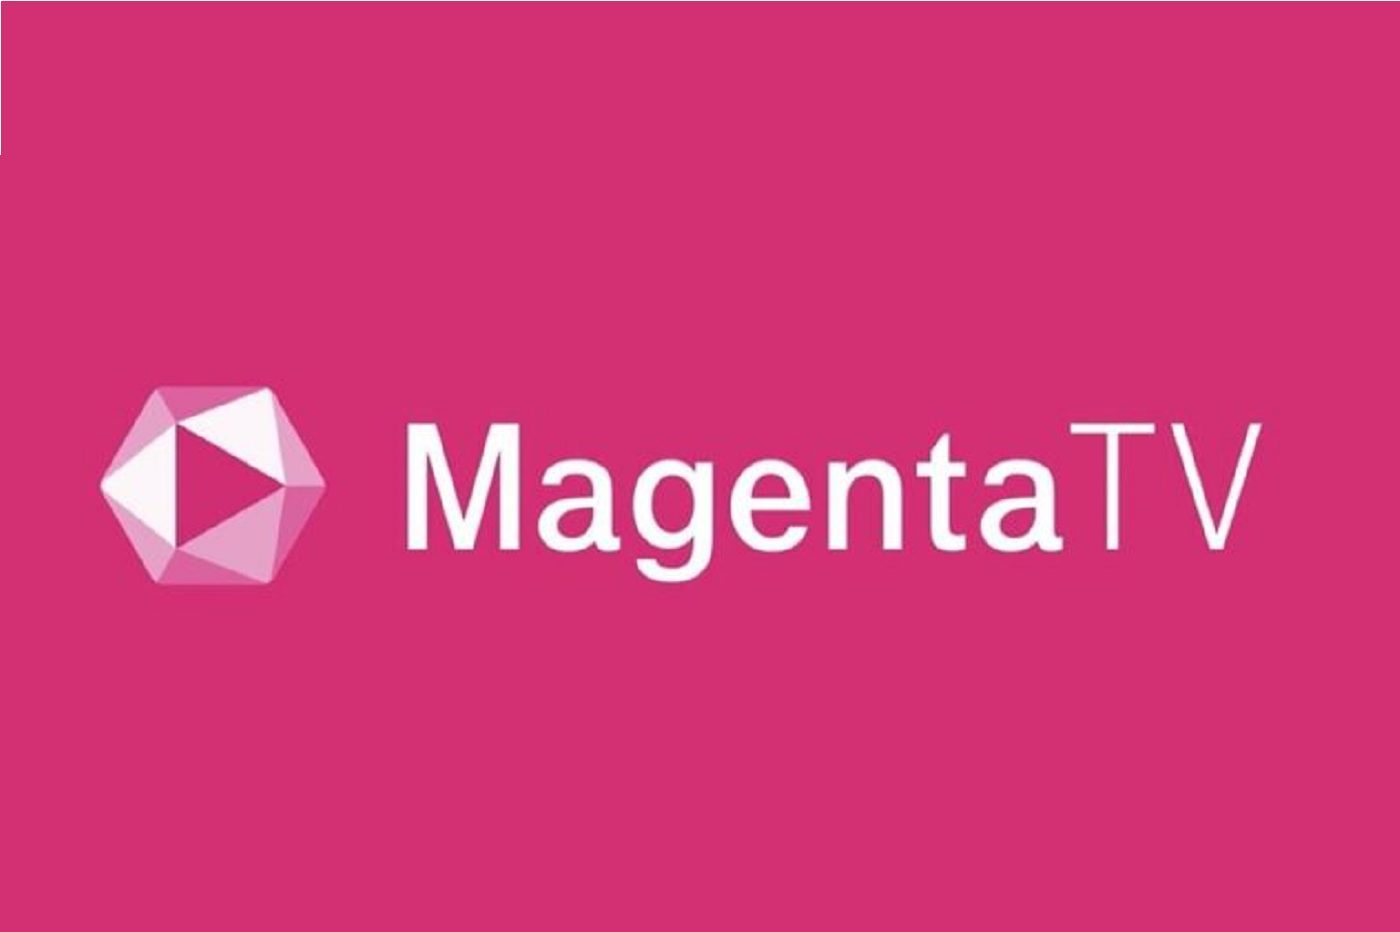 Magenta TV live im Ausland ansehen Wie entsperre ich die Blockierung?